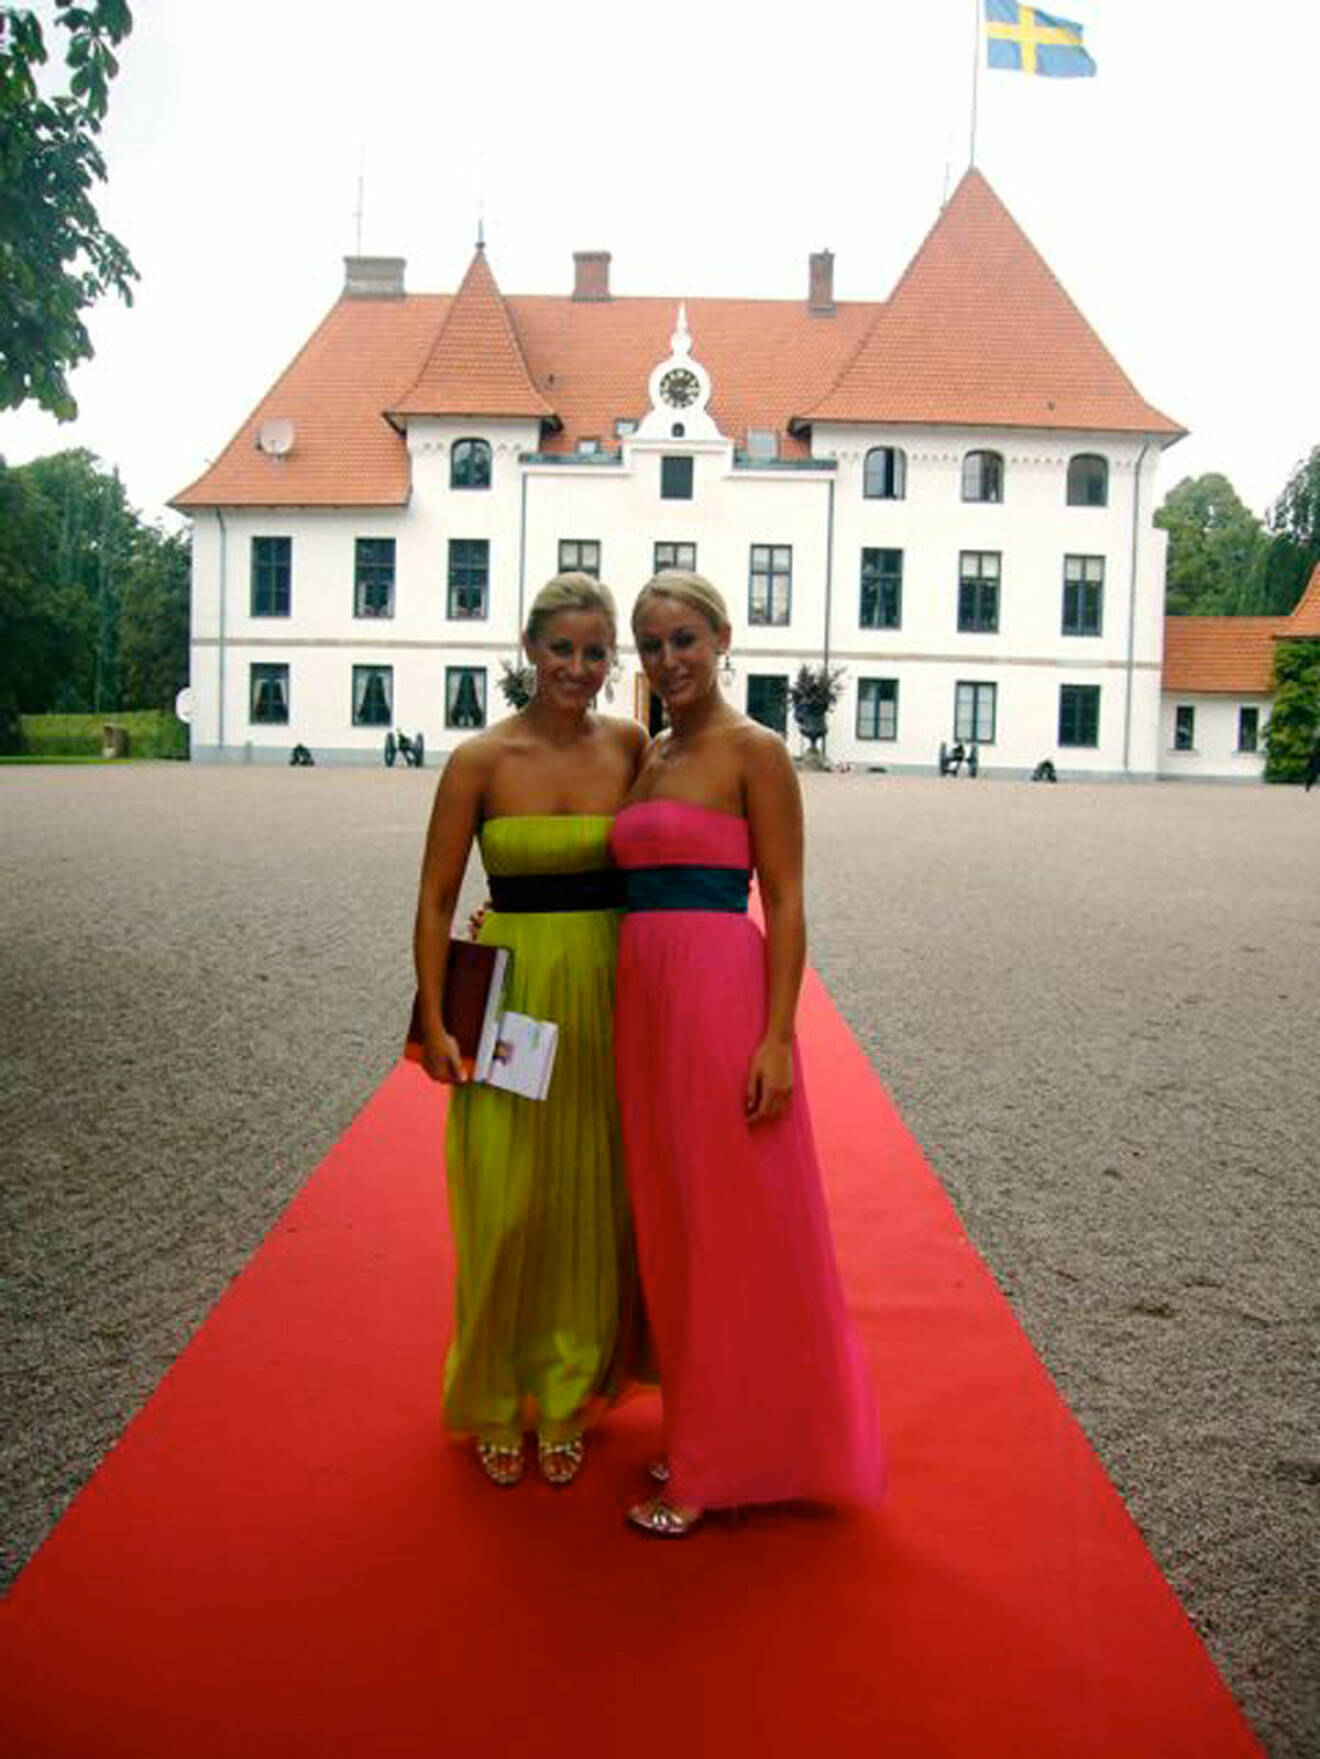 Brudgummens systrar Elsa och Malin Andrén fram för familjen Gyllenkroks slott Björnstorp från 1752.